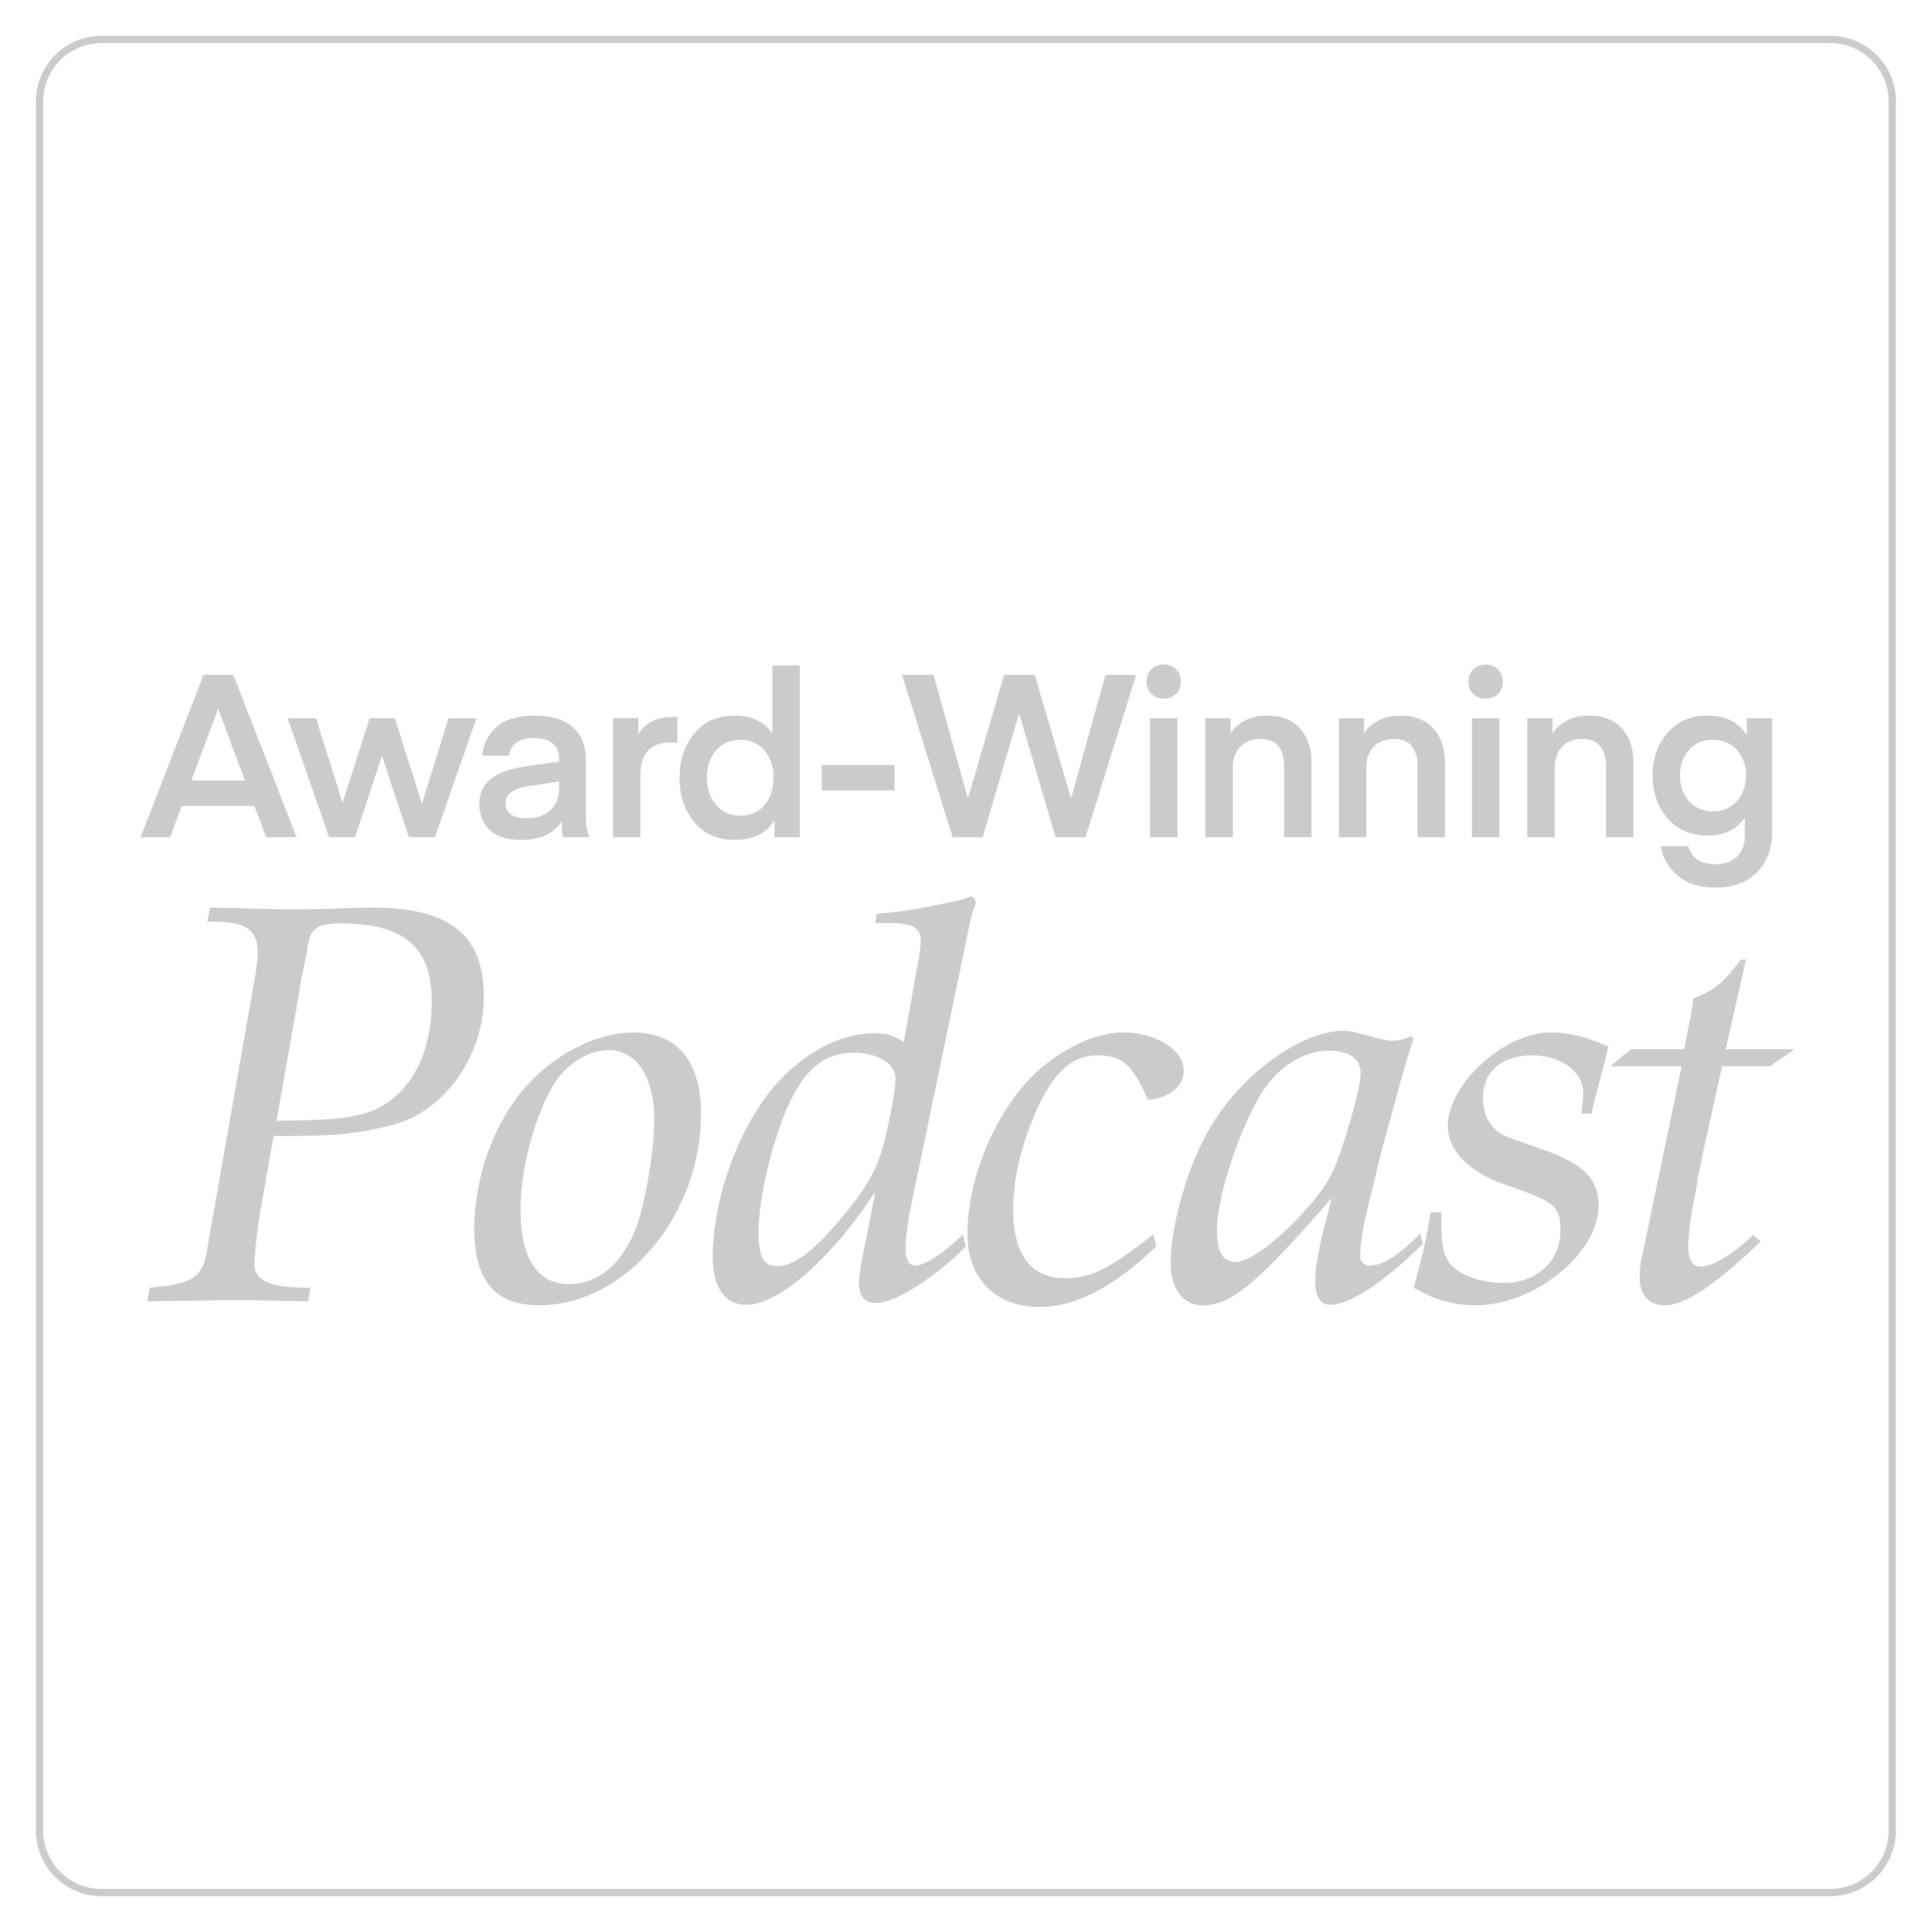 Award-Winning Podcast | Erik Kruger